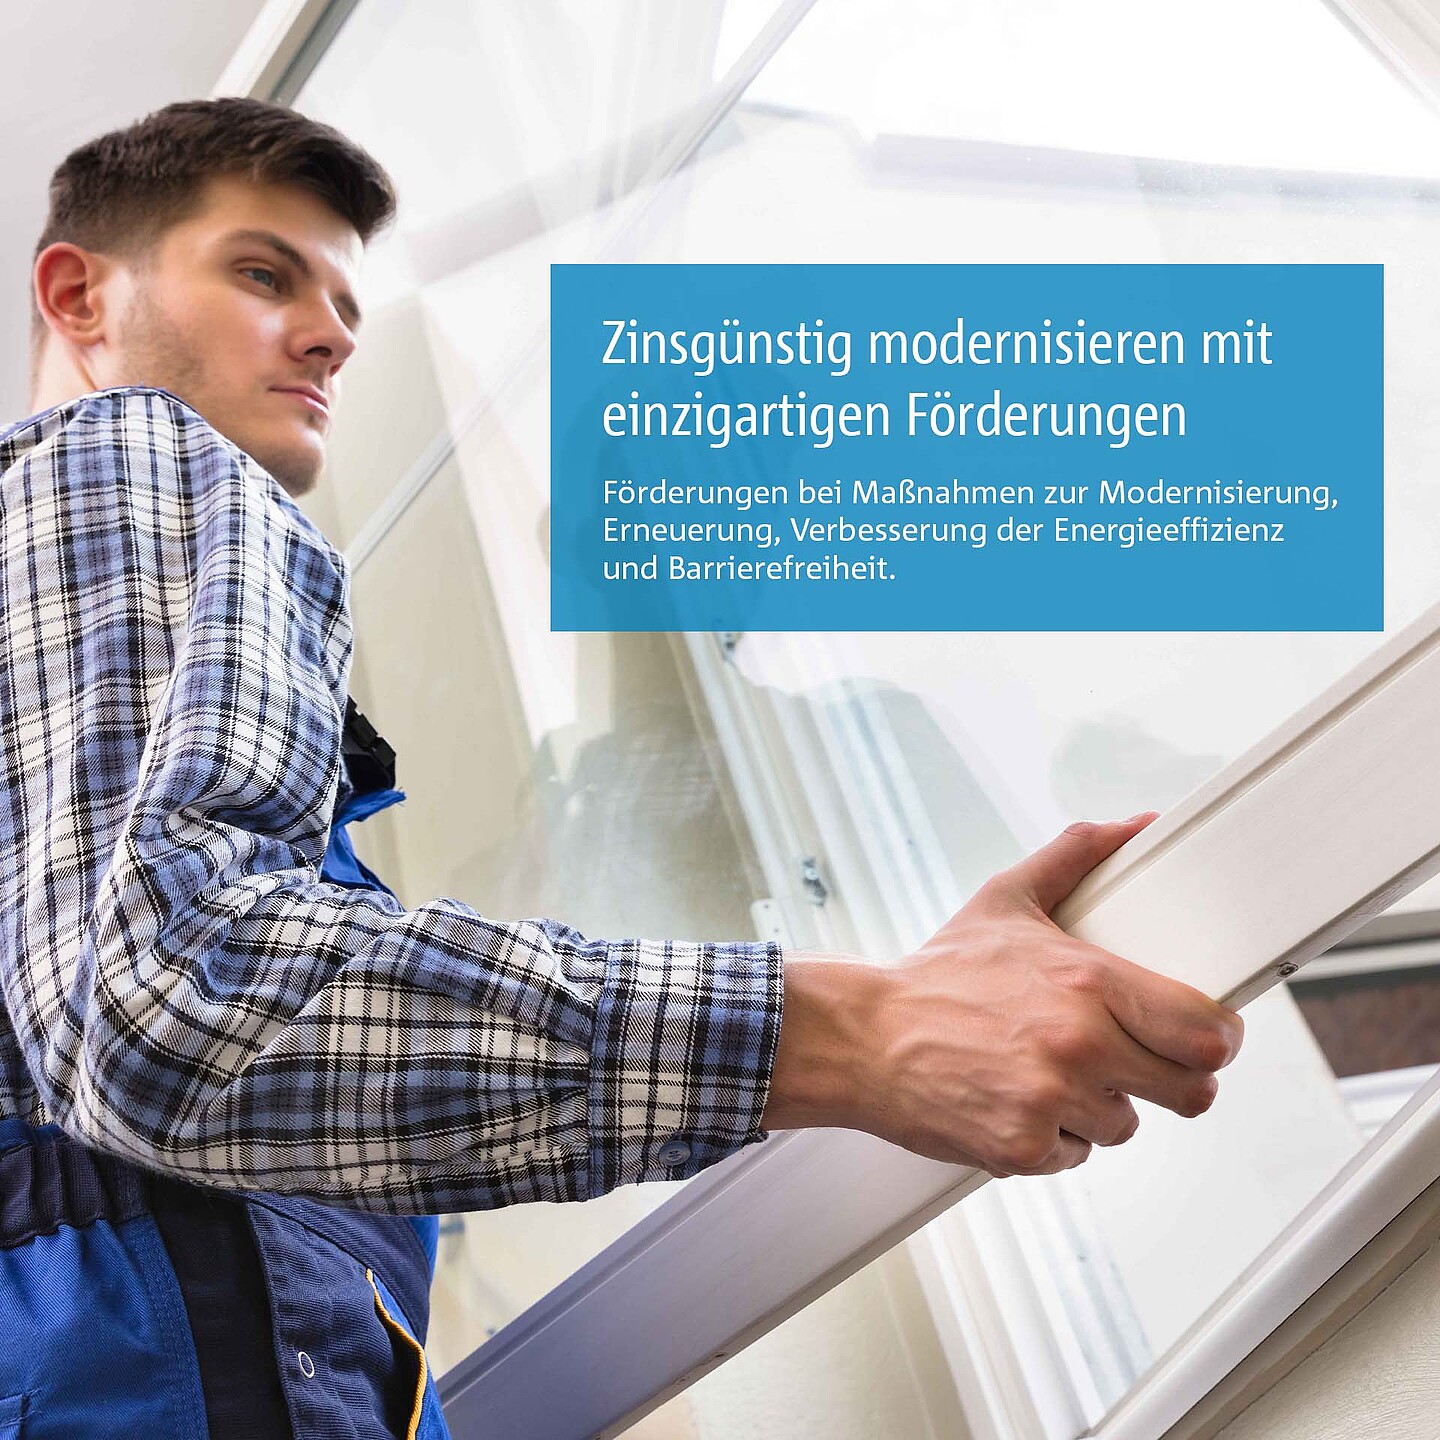 Handwerker setzt Fenster ein: Energetische Sanierung und nichtenergetische Maßnahmenförderung mit dem einzigartigen WEG-Modernisierungsprogramm der BayernLabo.